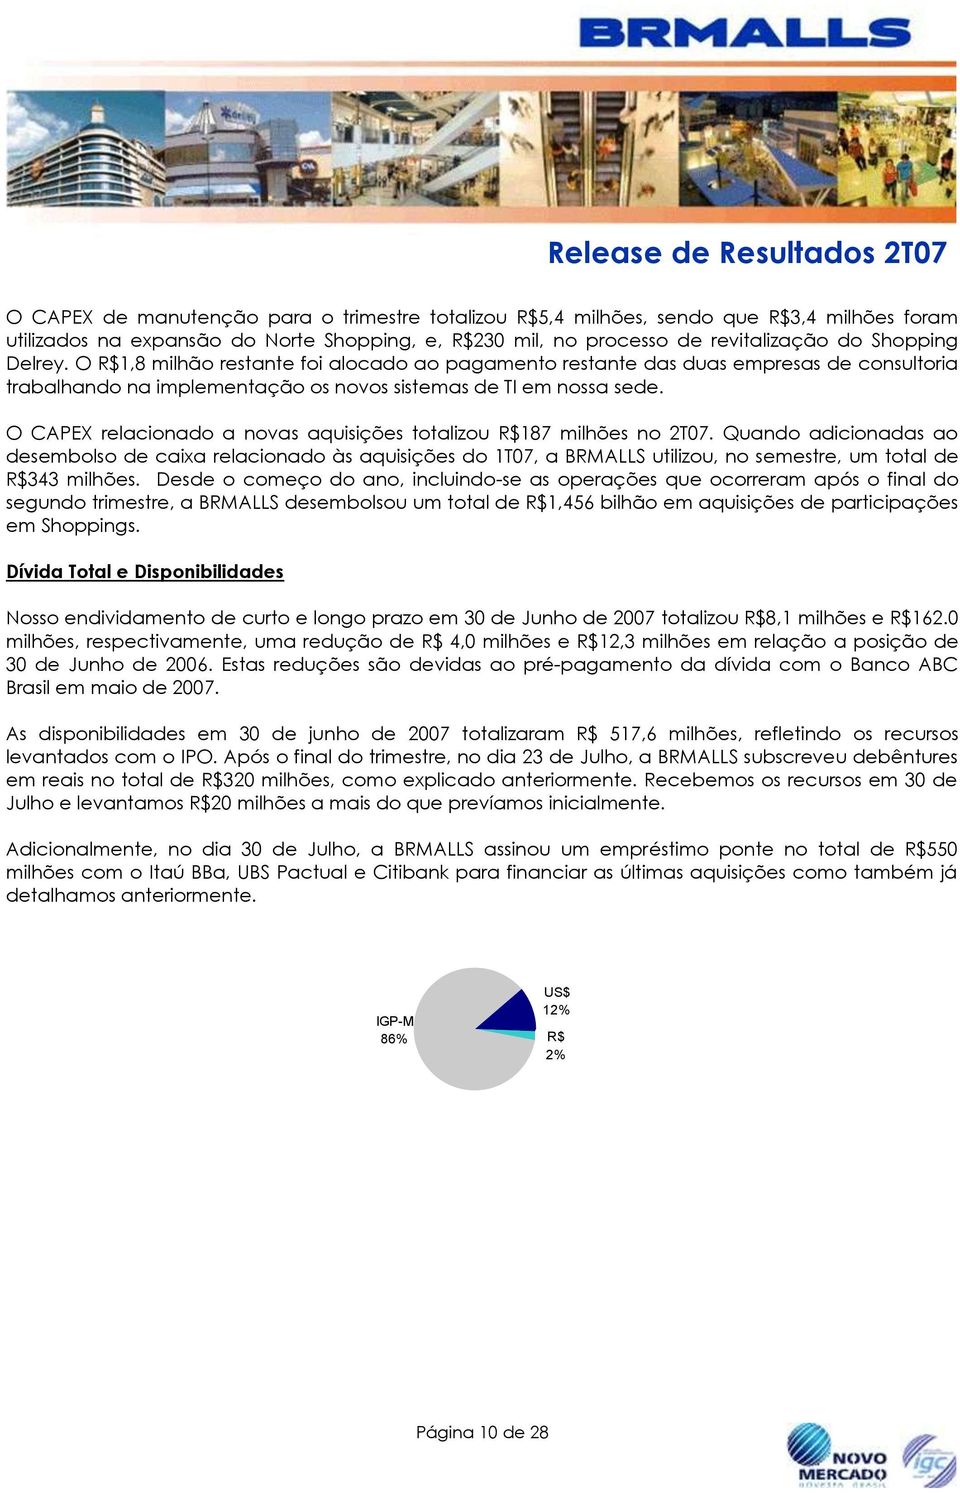 O CAPEX relacionado a novas aquisições totalizou R$187 milhões no 2T07.